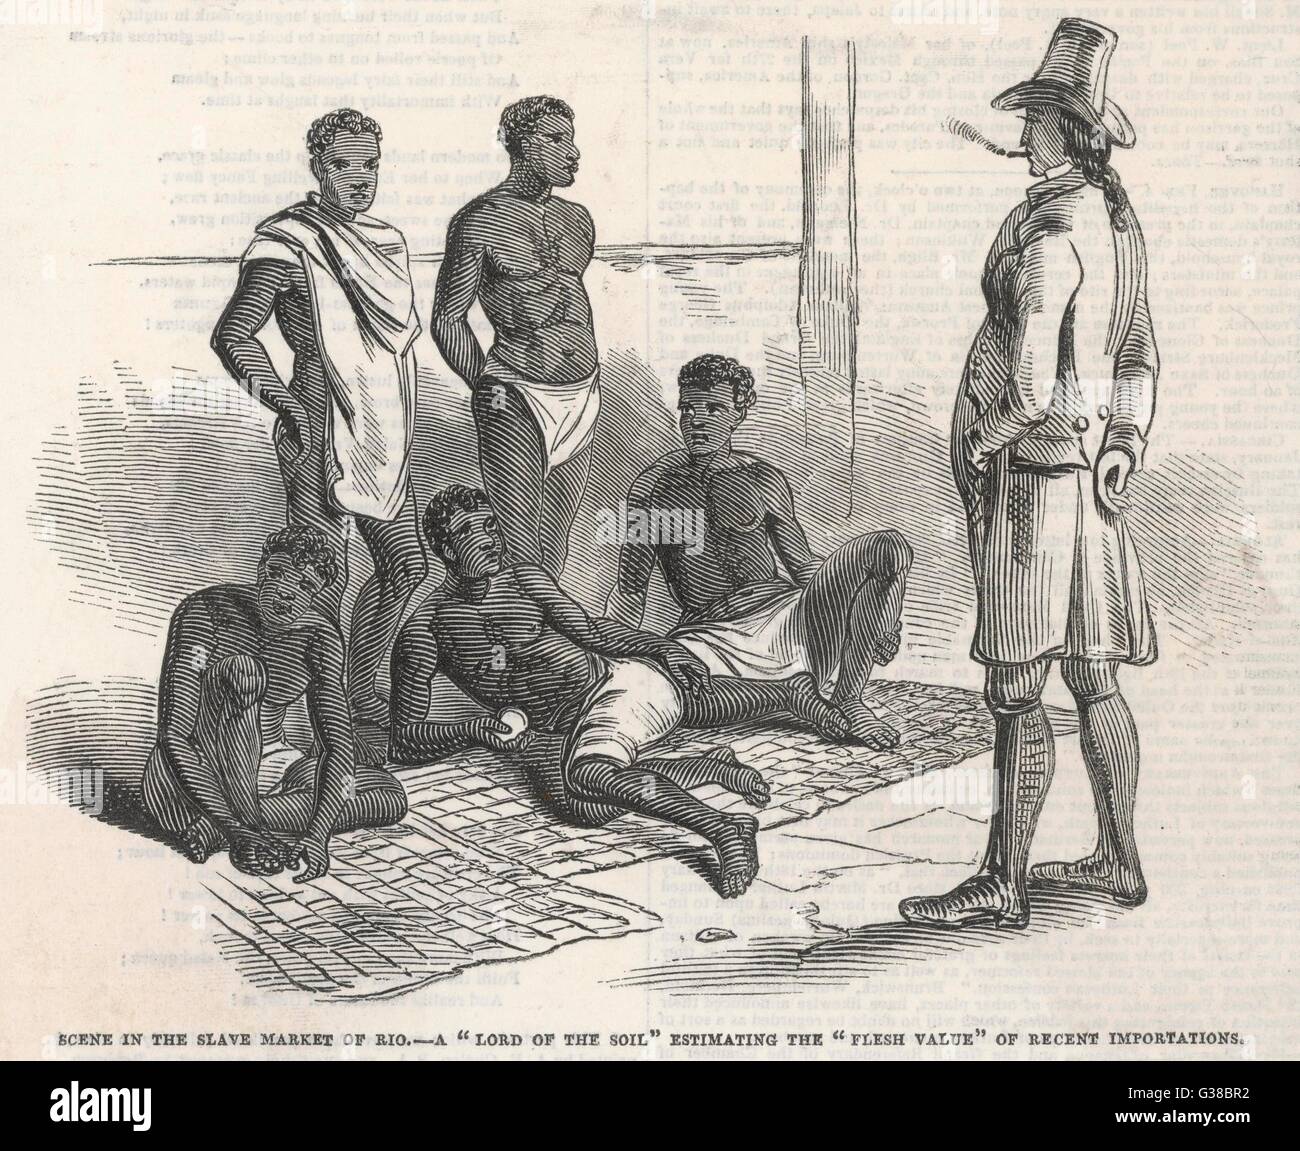 In scena il mercato degli schiavi del Rio - un "Signore del suolo" la stima della "carne" di valore delle recenti importazioni - "Niente può essere più calcolati a shock...' data: 1845 Foto Stock